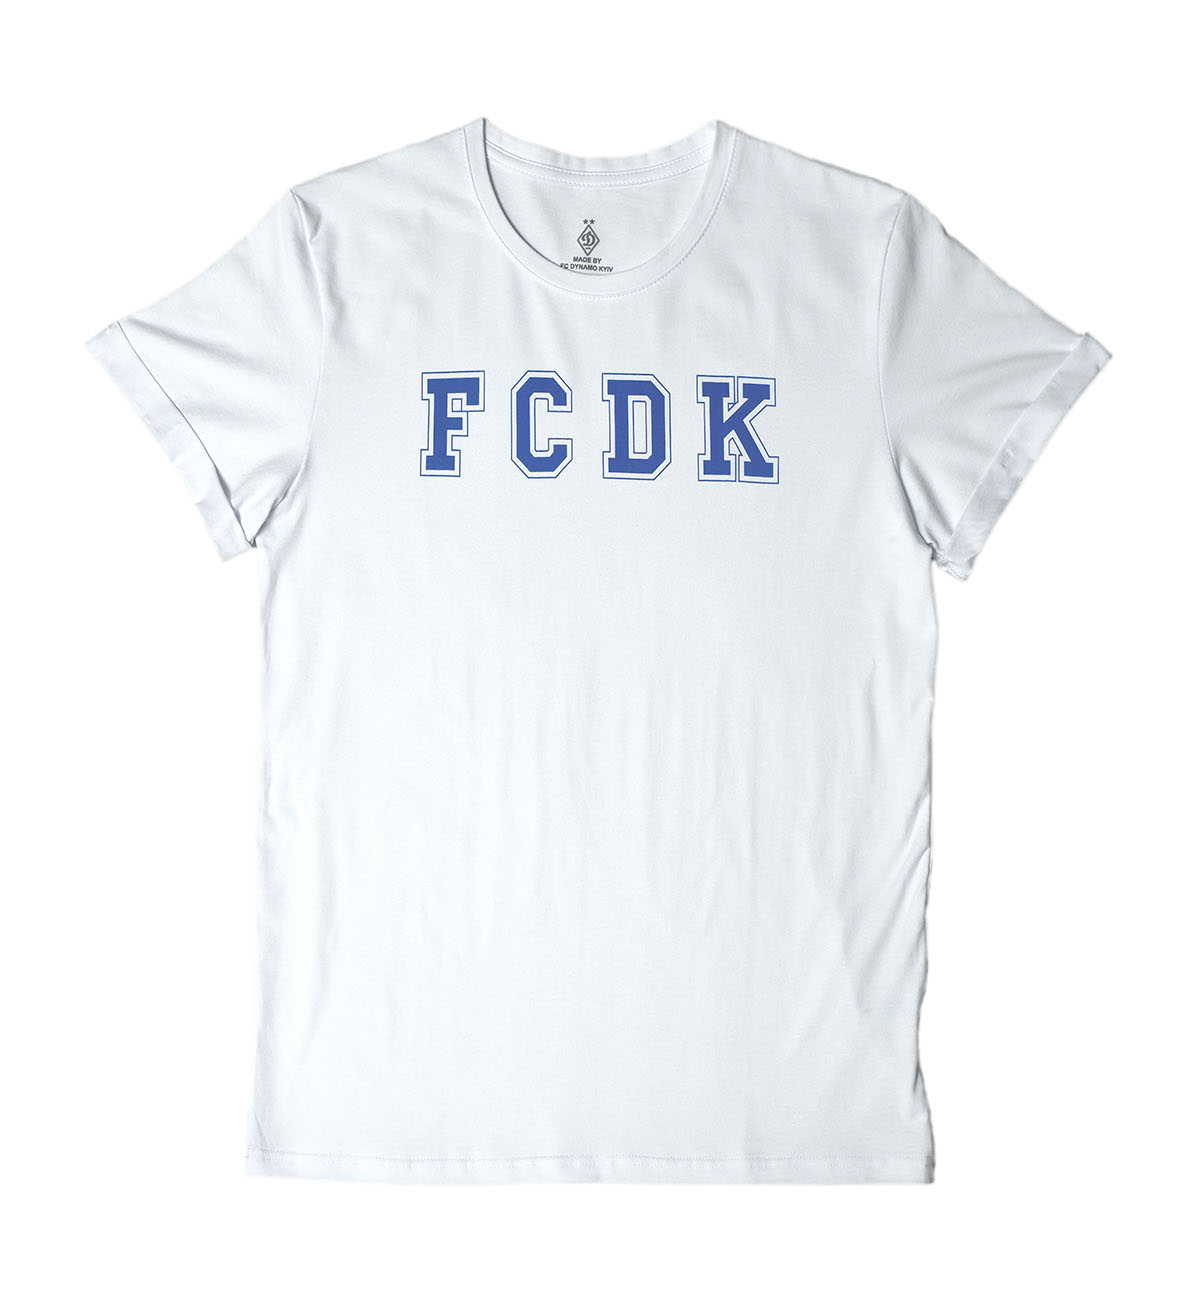 Футболка "FCDK", белая